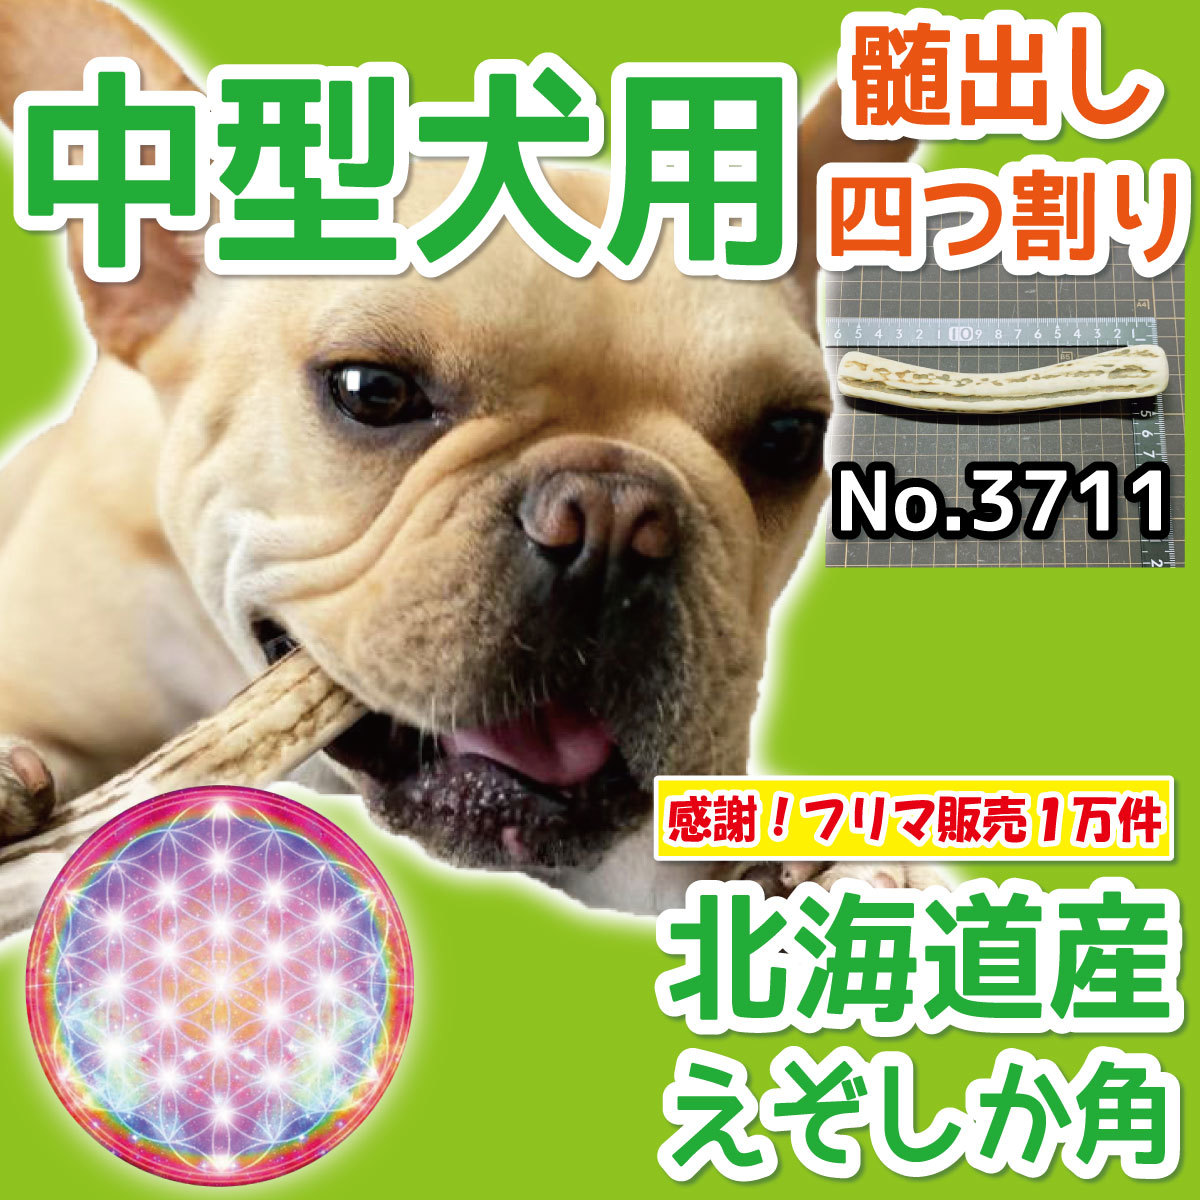 # для средних собак # натуральный Hokkaido производство .. олень. угол # 4 половина десятая часть 1 шт. # собака. игрушка # без добавок # олень. угол собака ezo олень tsuno37112